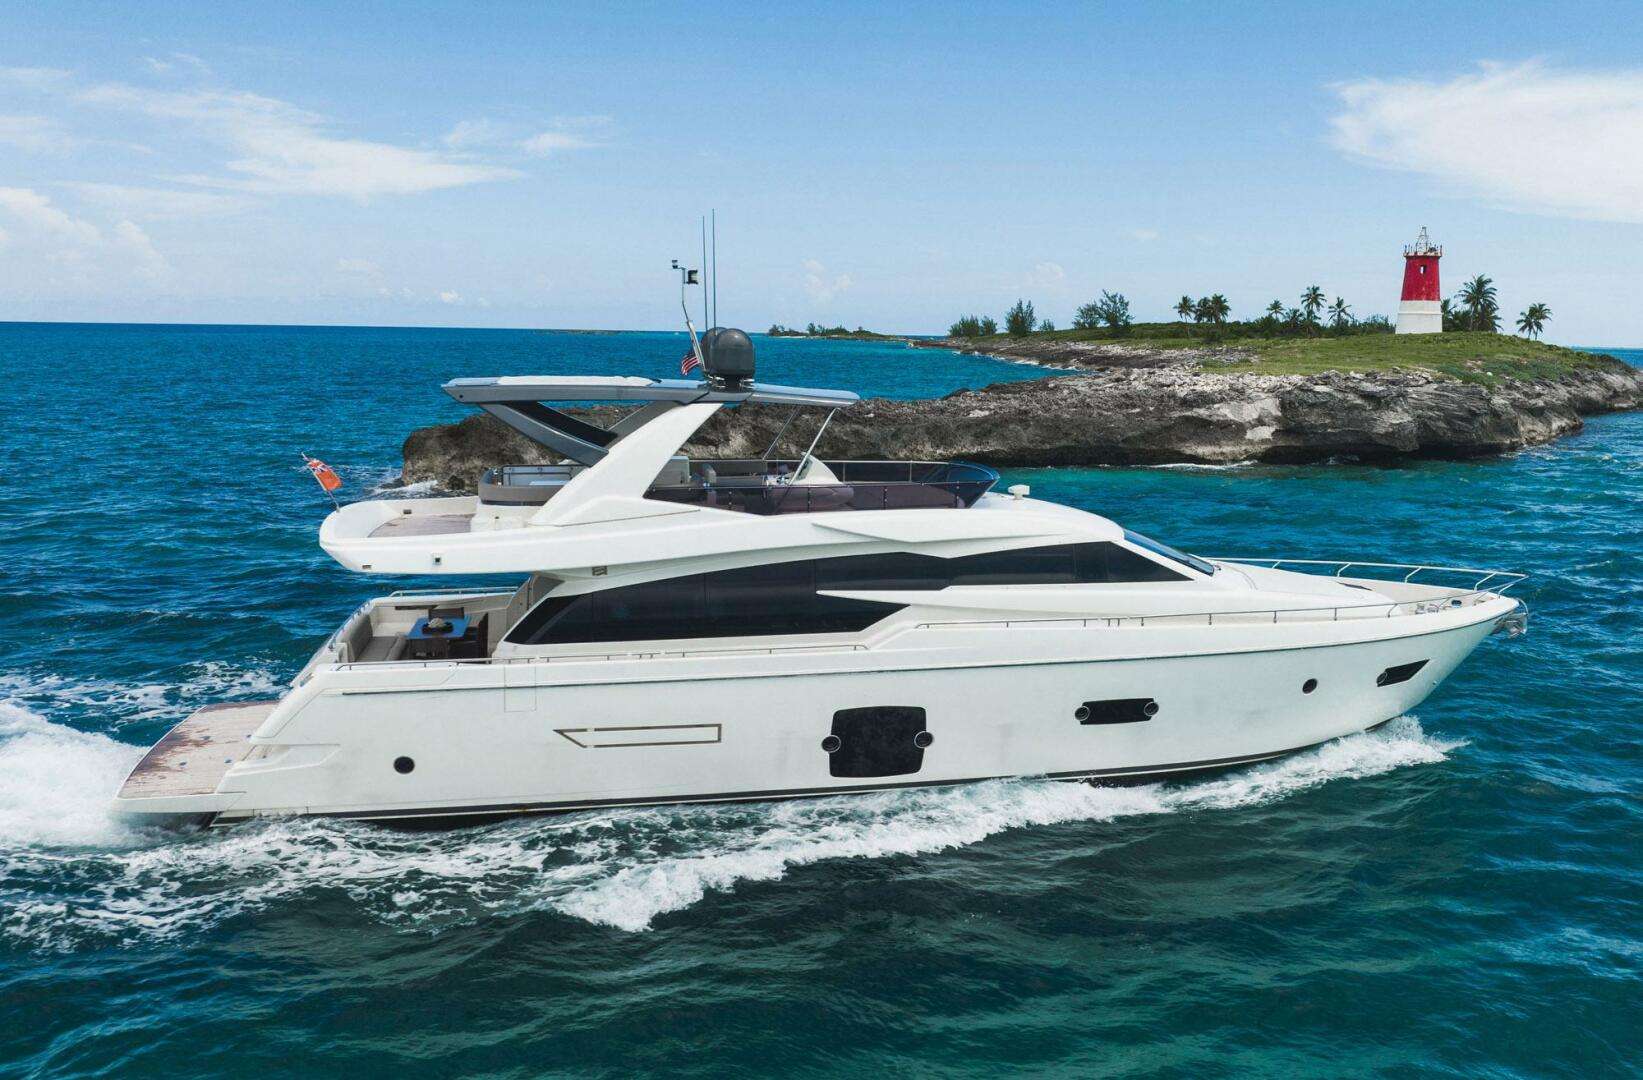 KUDU - Yacht Charter Key West & Boat hire in US East Coast & Bahamas 1